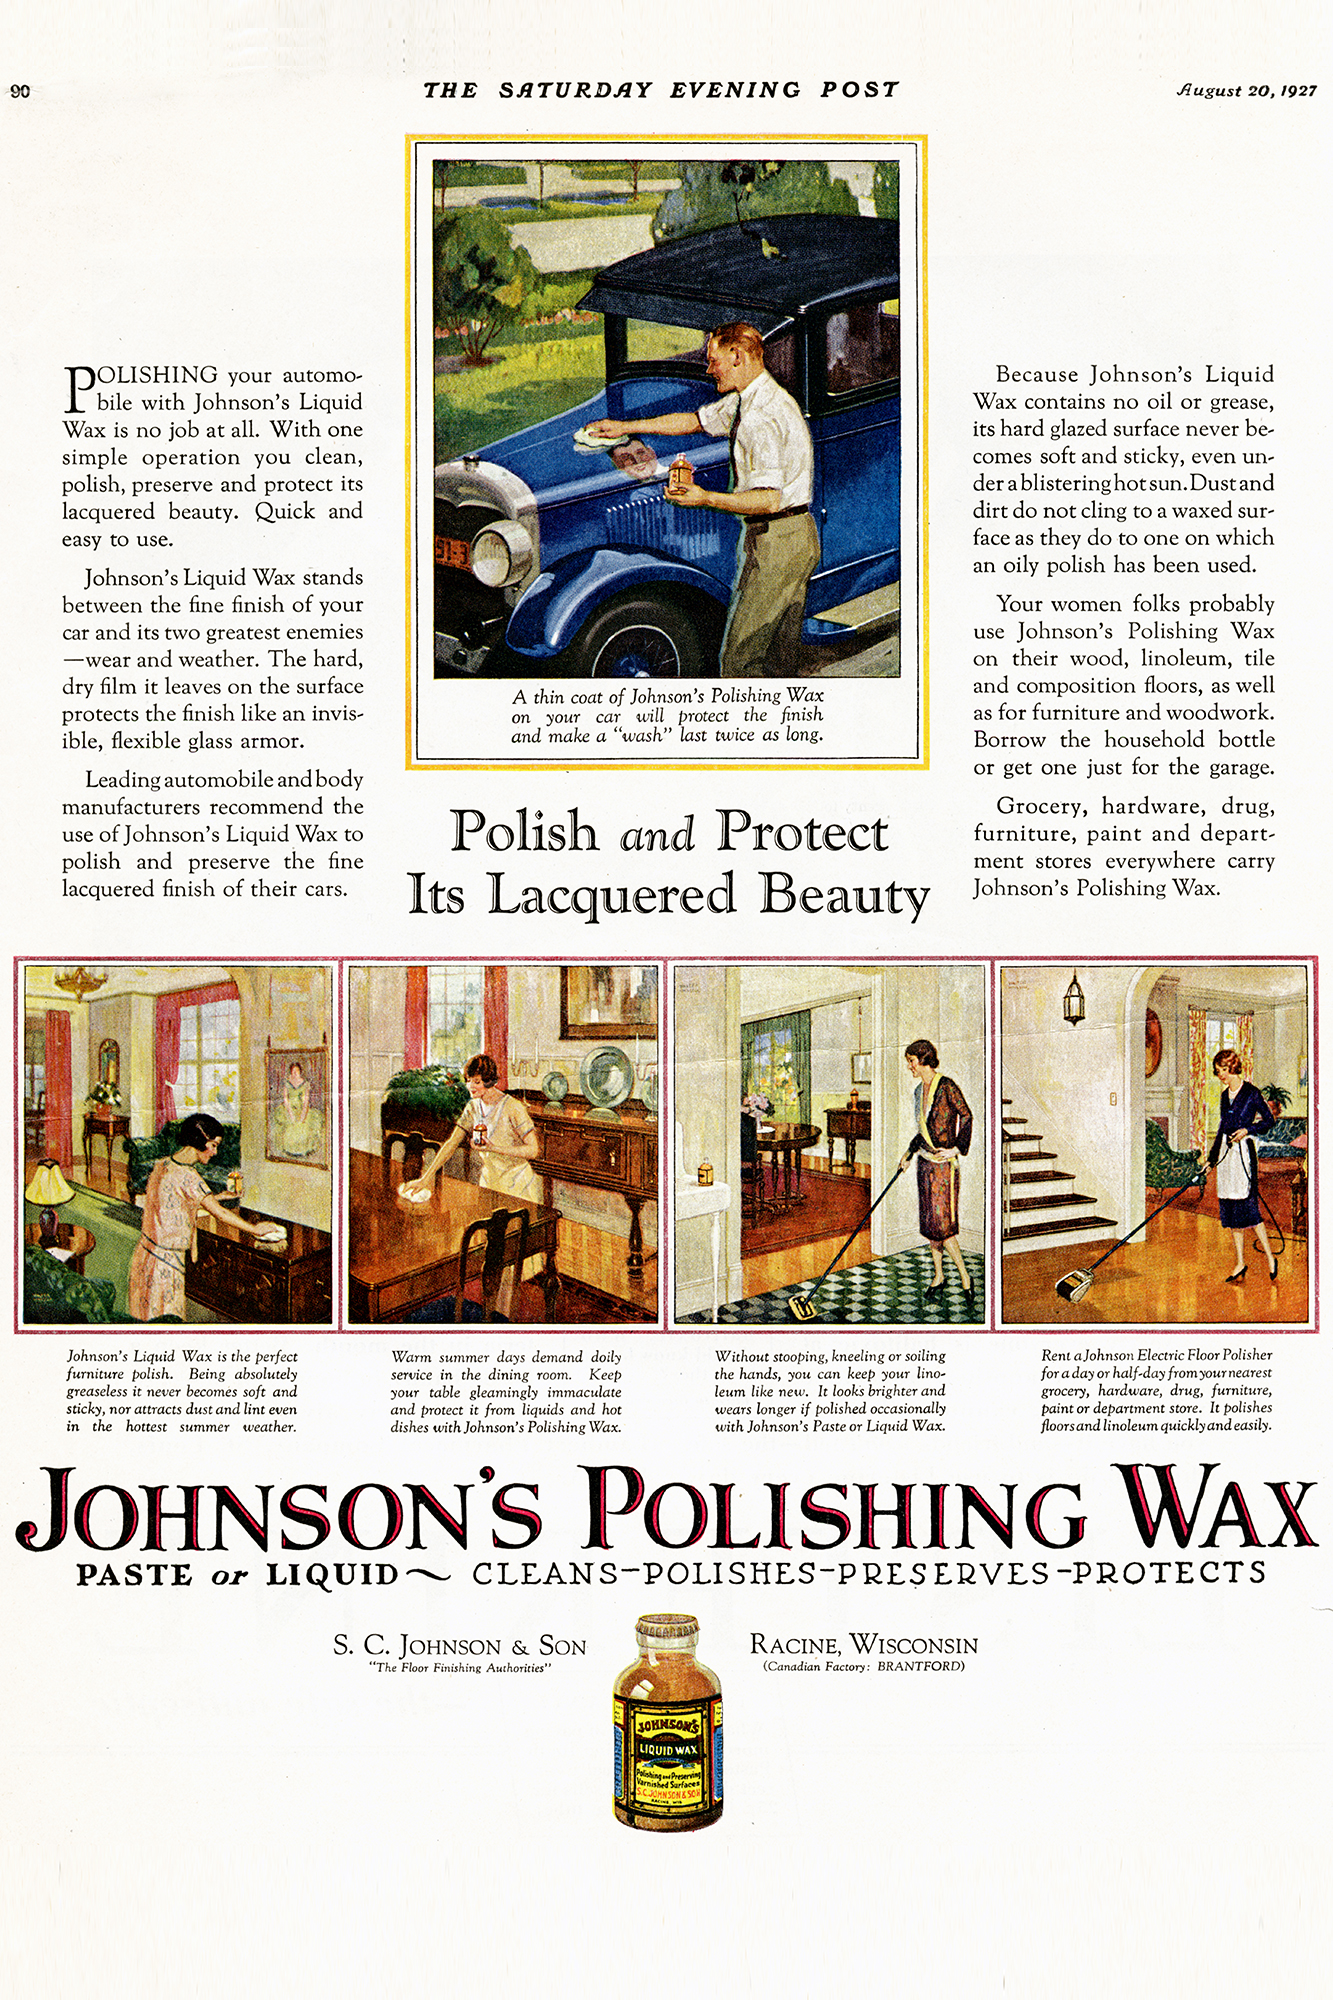 Publicité pour la cire de Johnson dans le Saturday Evening Post datant de 1927